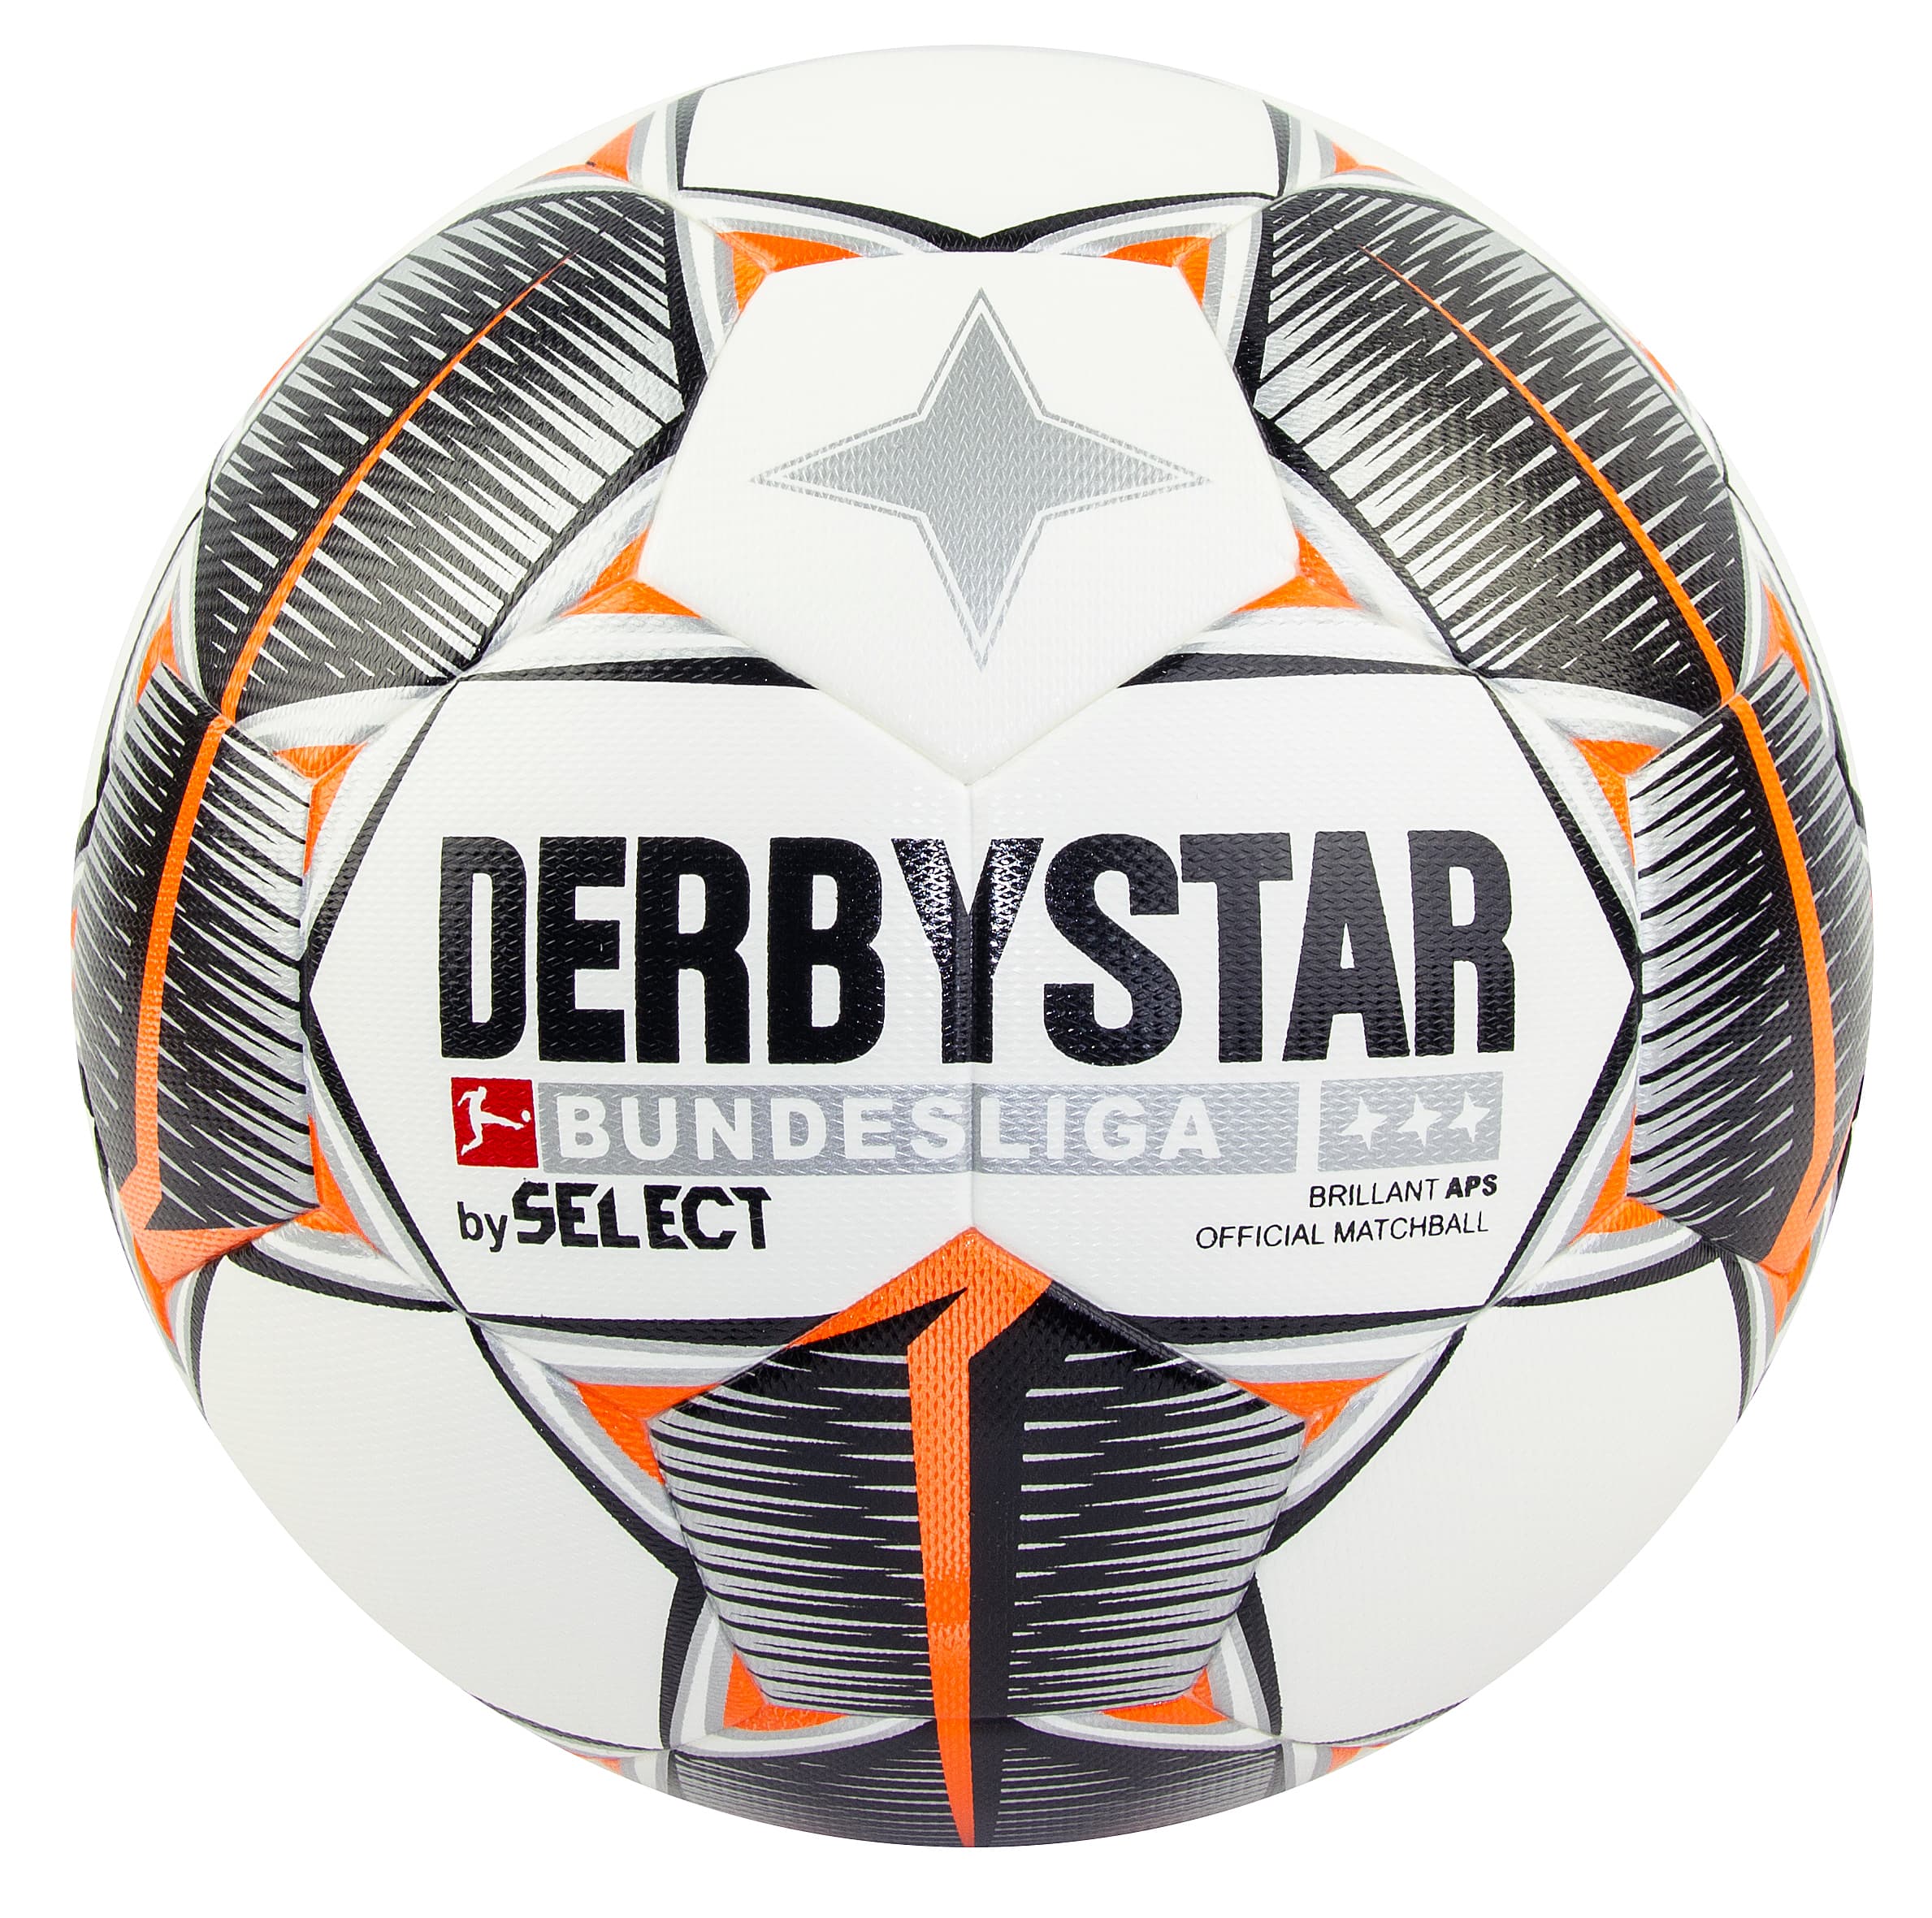 Футбольный мяч «DERBYSTAR by Select FB Bundesliga Brillant APS» размер 5, 32 панели, F33953 / Микс